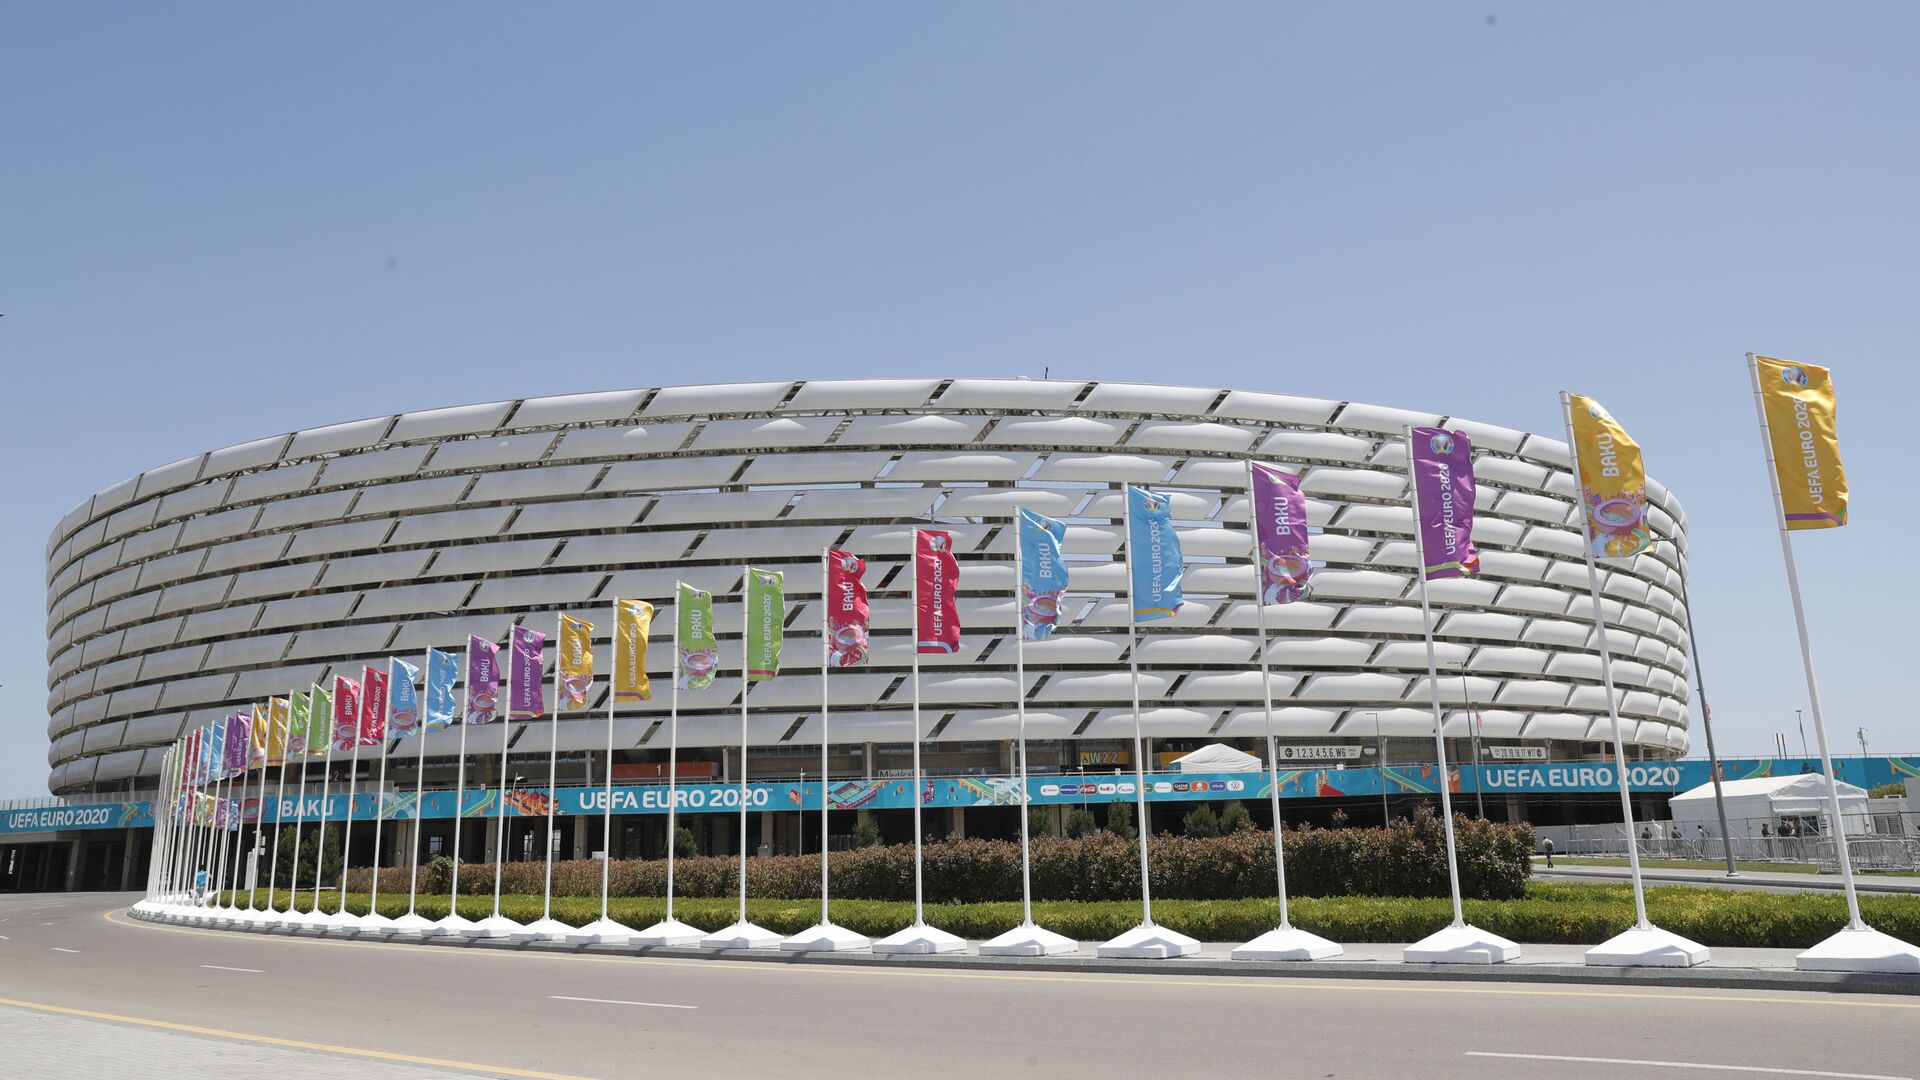 Вид на Бакинский олимпийский стадион, фото из архива - Sputnik Азербайджан, 1920, 12.06.2021